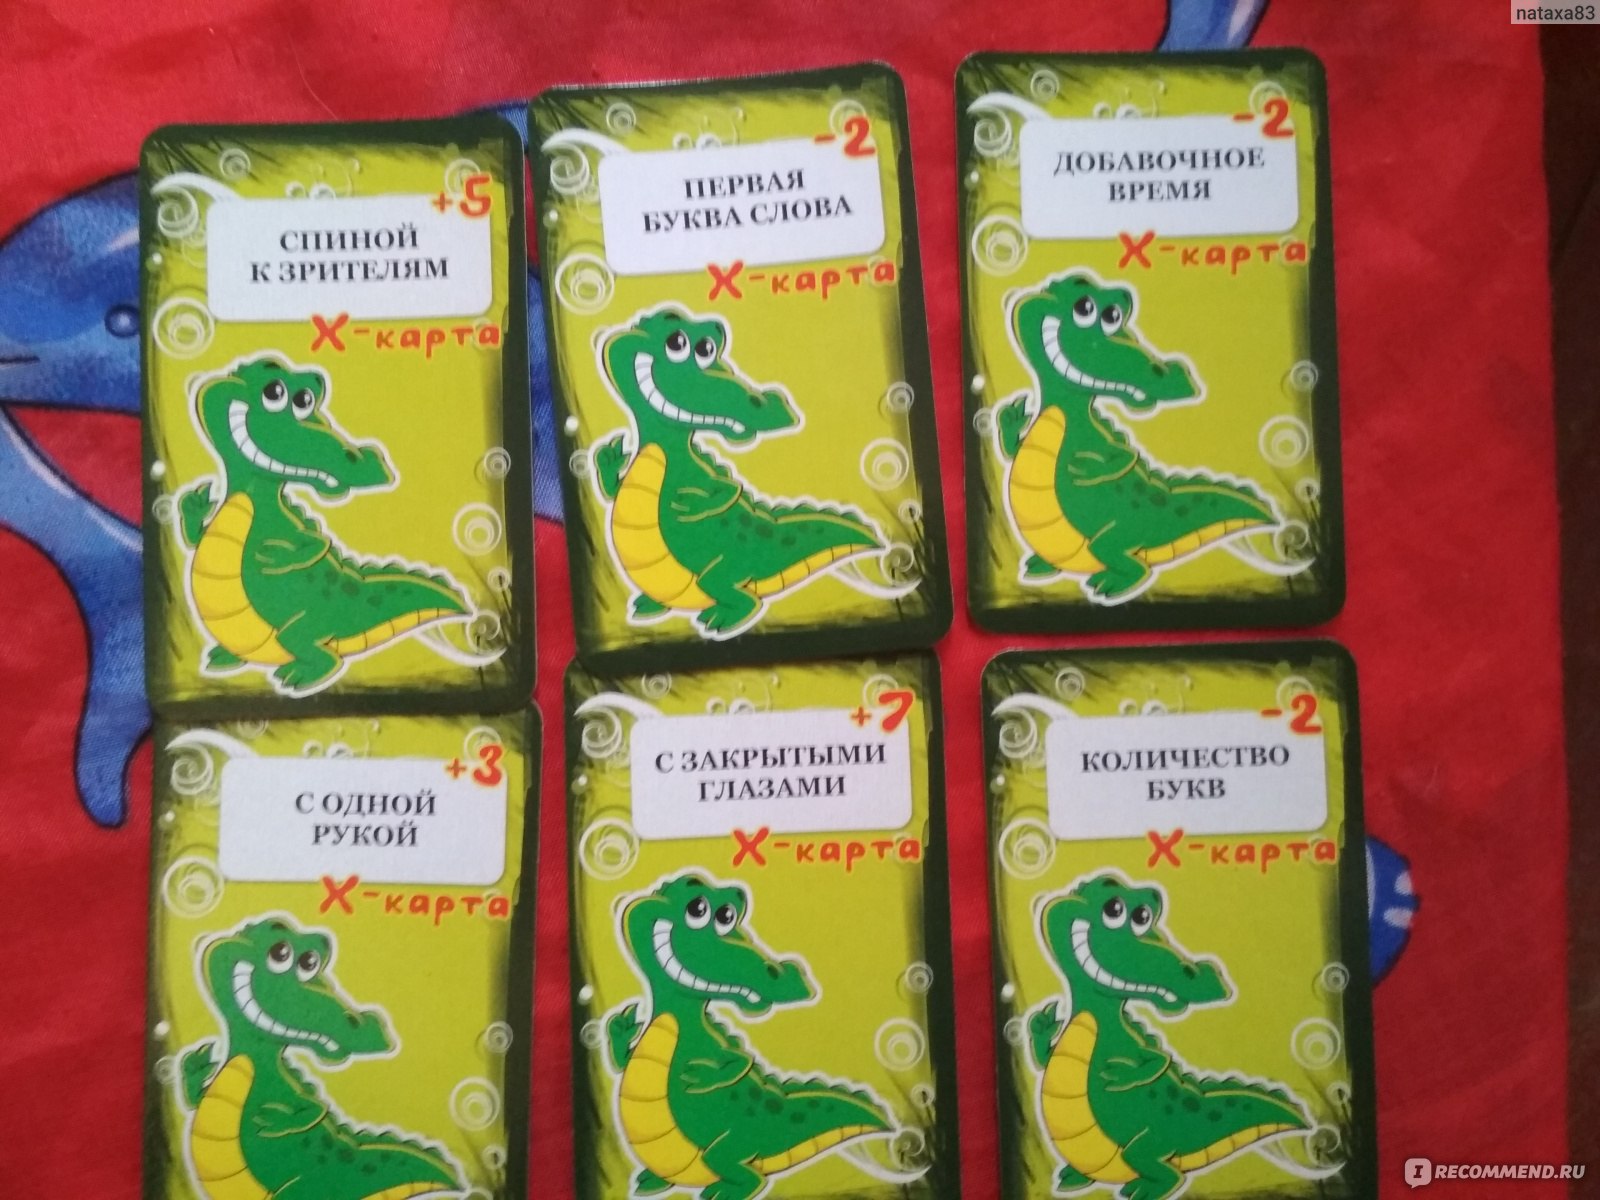 Игра крокодил вопросы. Игра крокодил для веселой компании. Карты игральные "Крокодильчик". Карточки для игры крокодил для веселой компании. Игра Крокодильчик для веселой компании.